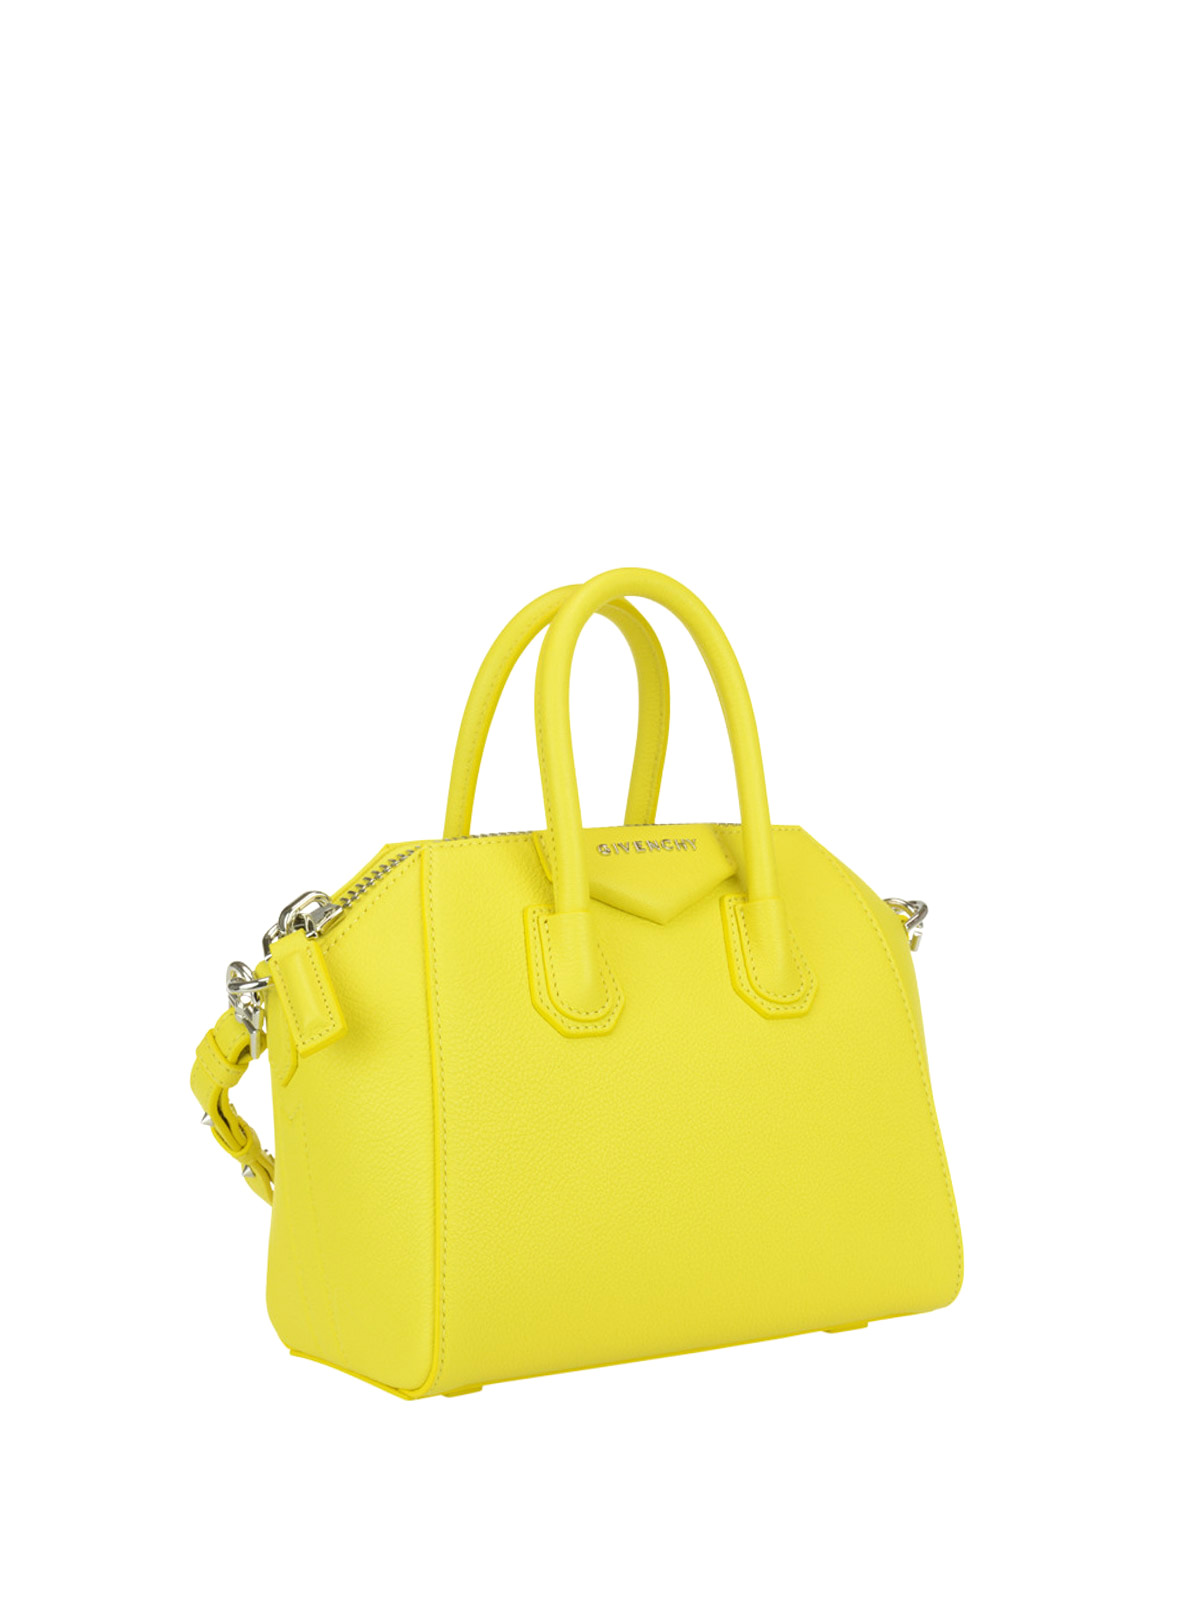 Givenchy Mini Antigona Leather Handbag